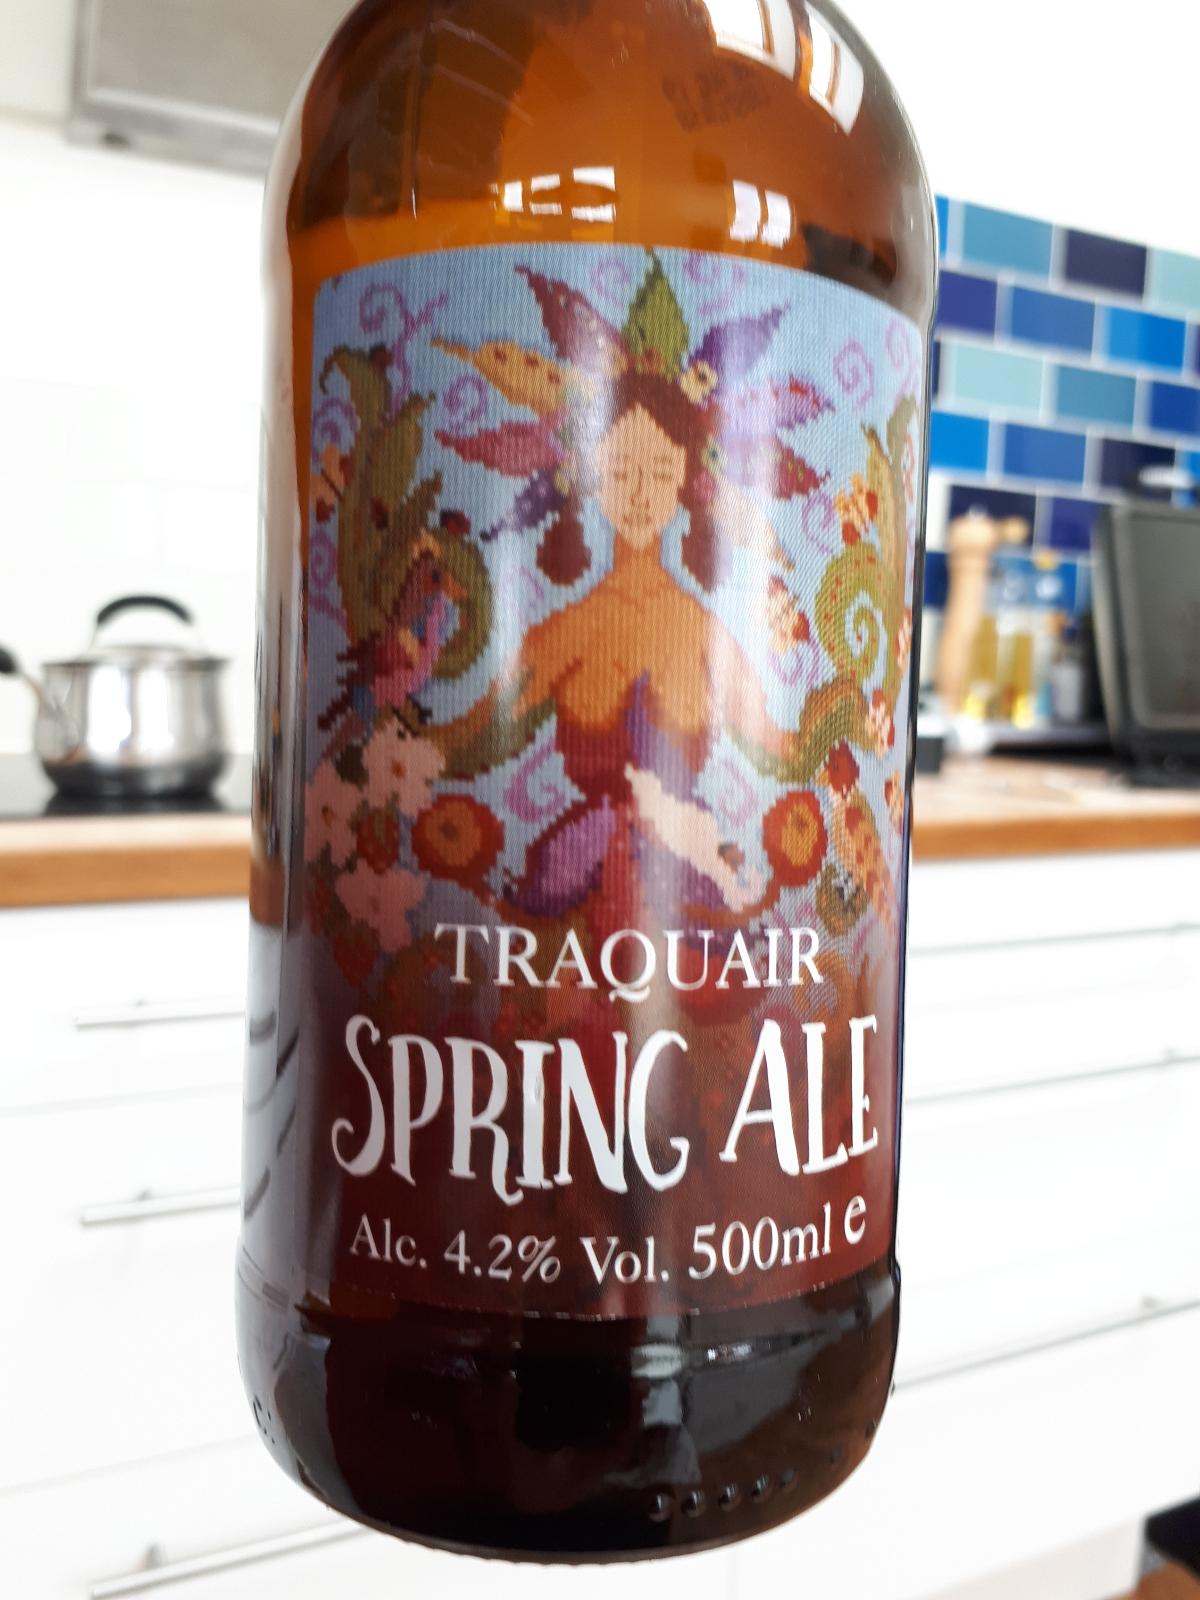 Spring Ale